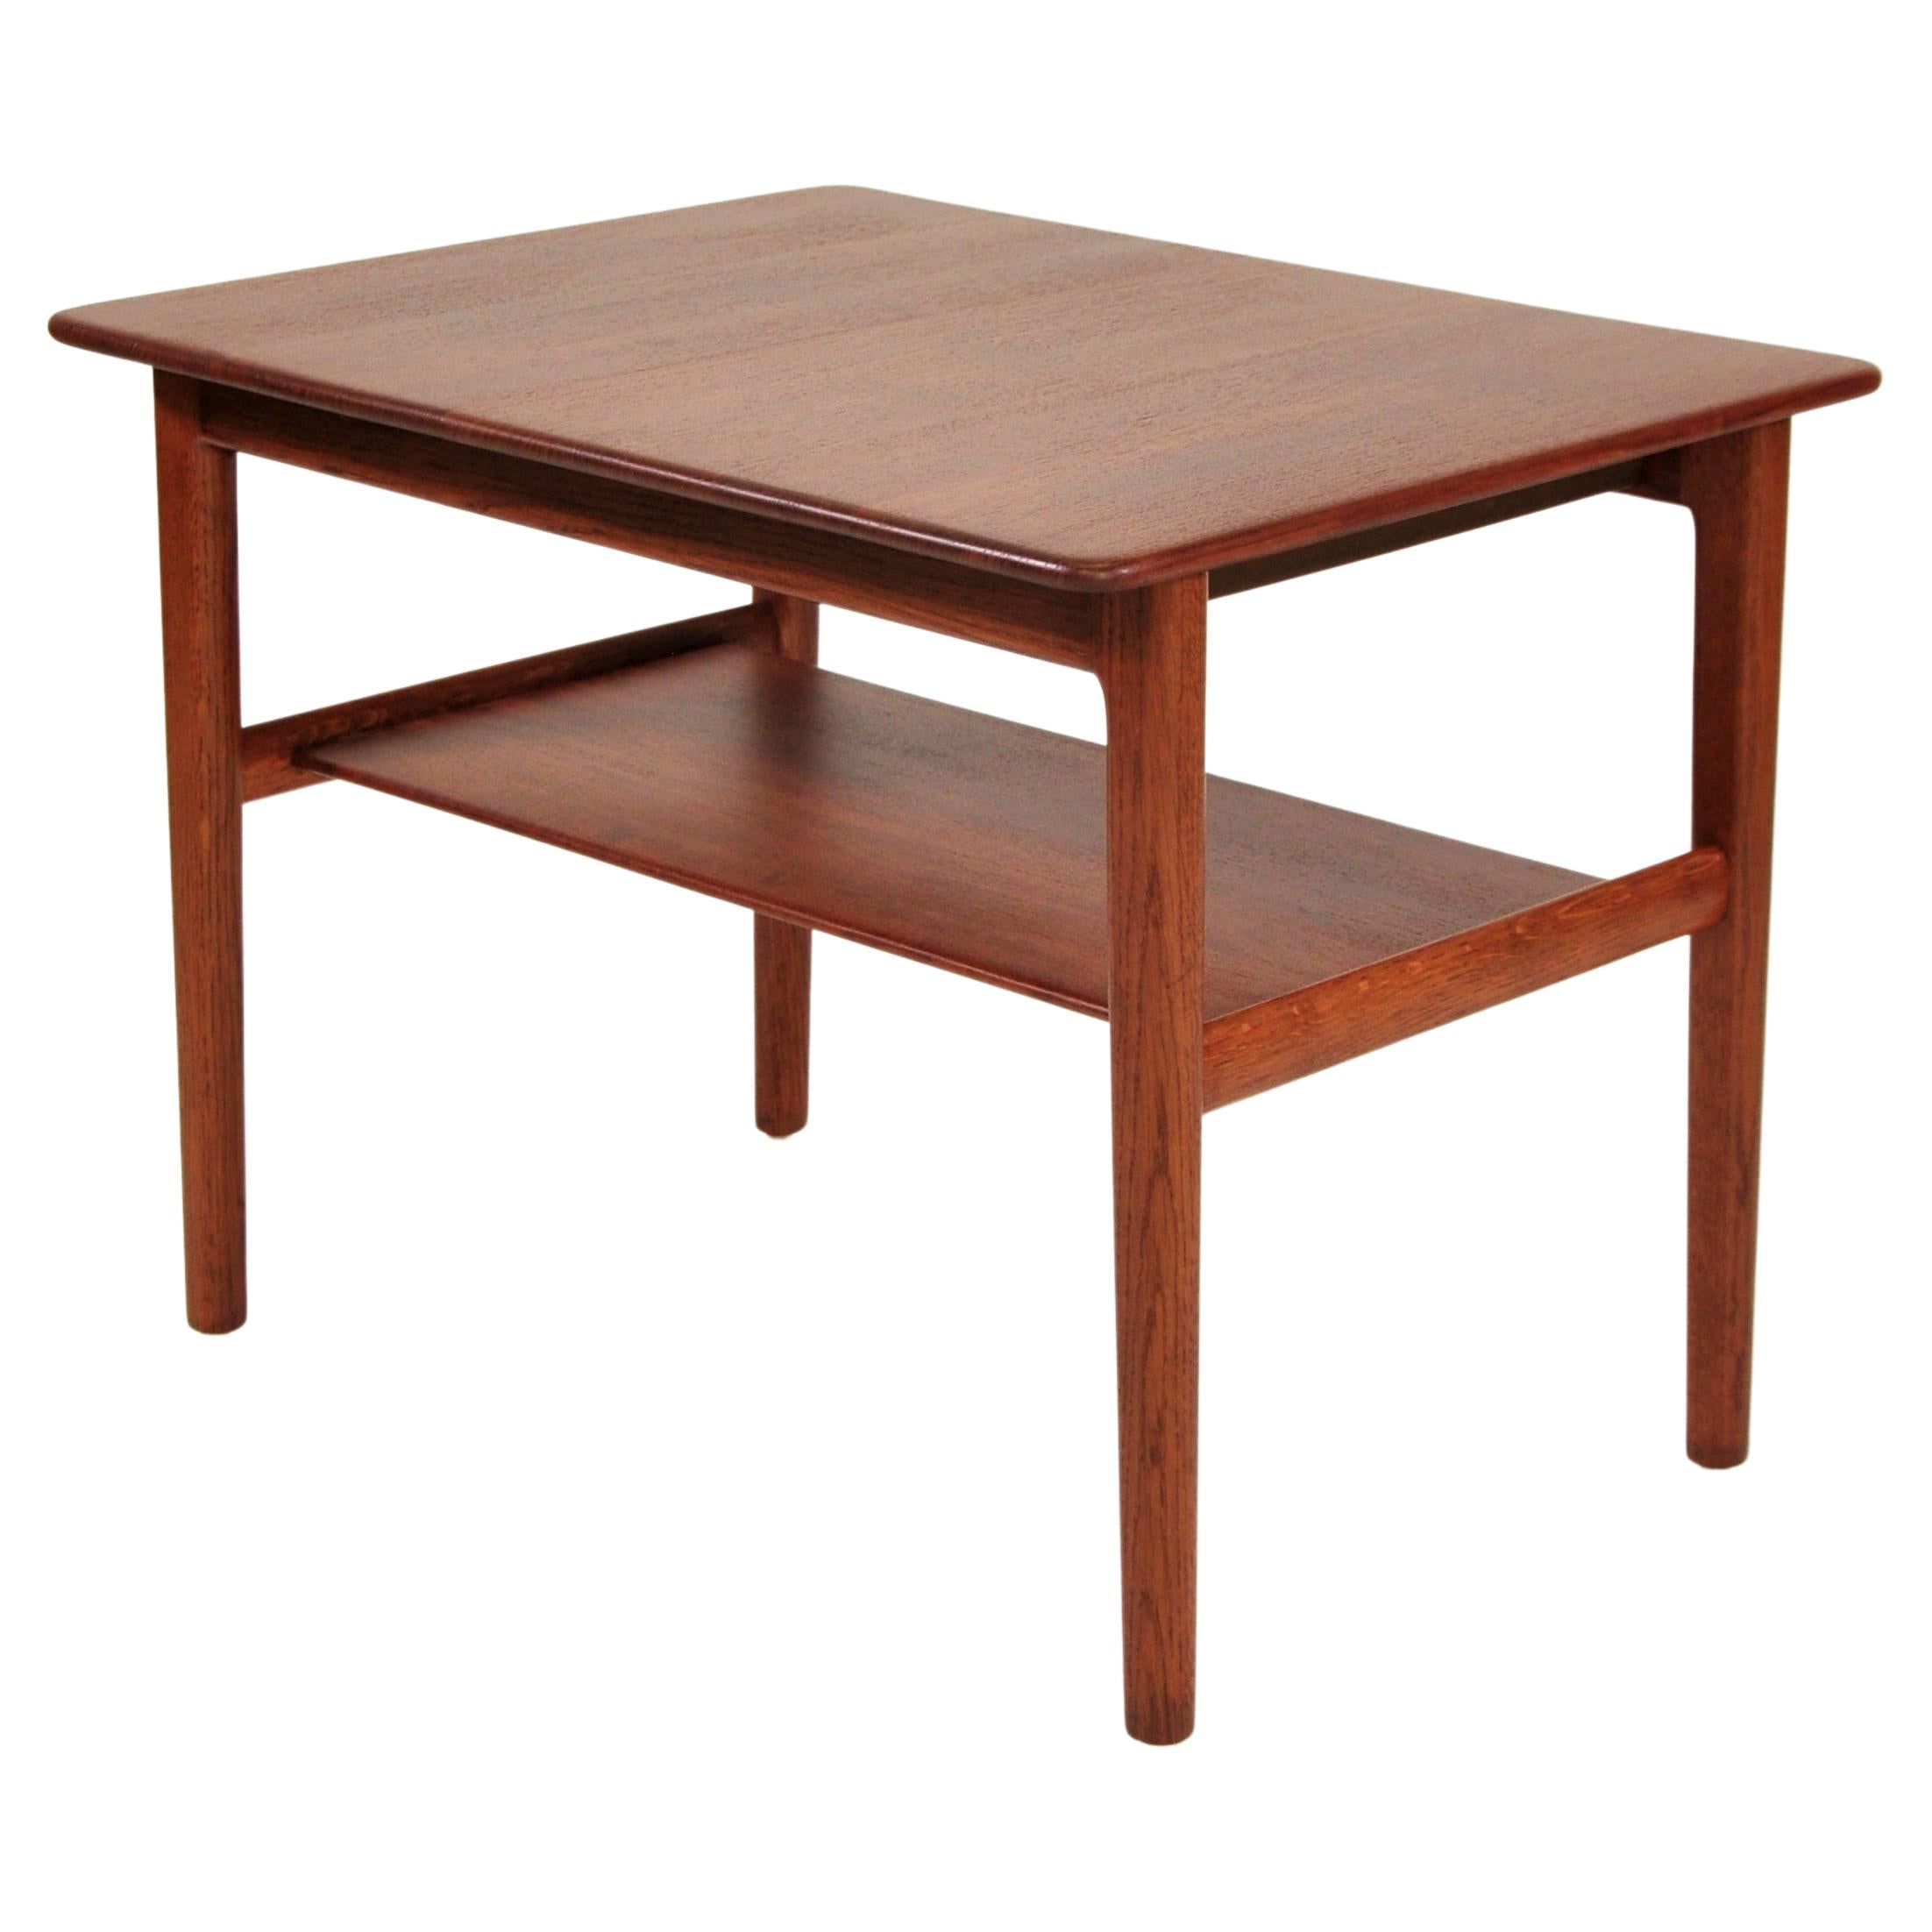 Hans Wegner Teak Table with Hidden Tray, Johannes Hansen, 1960s For Sale 1